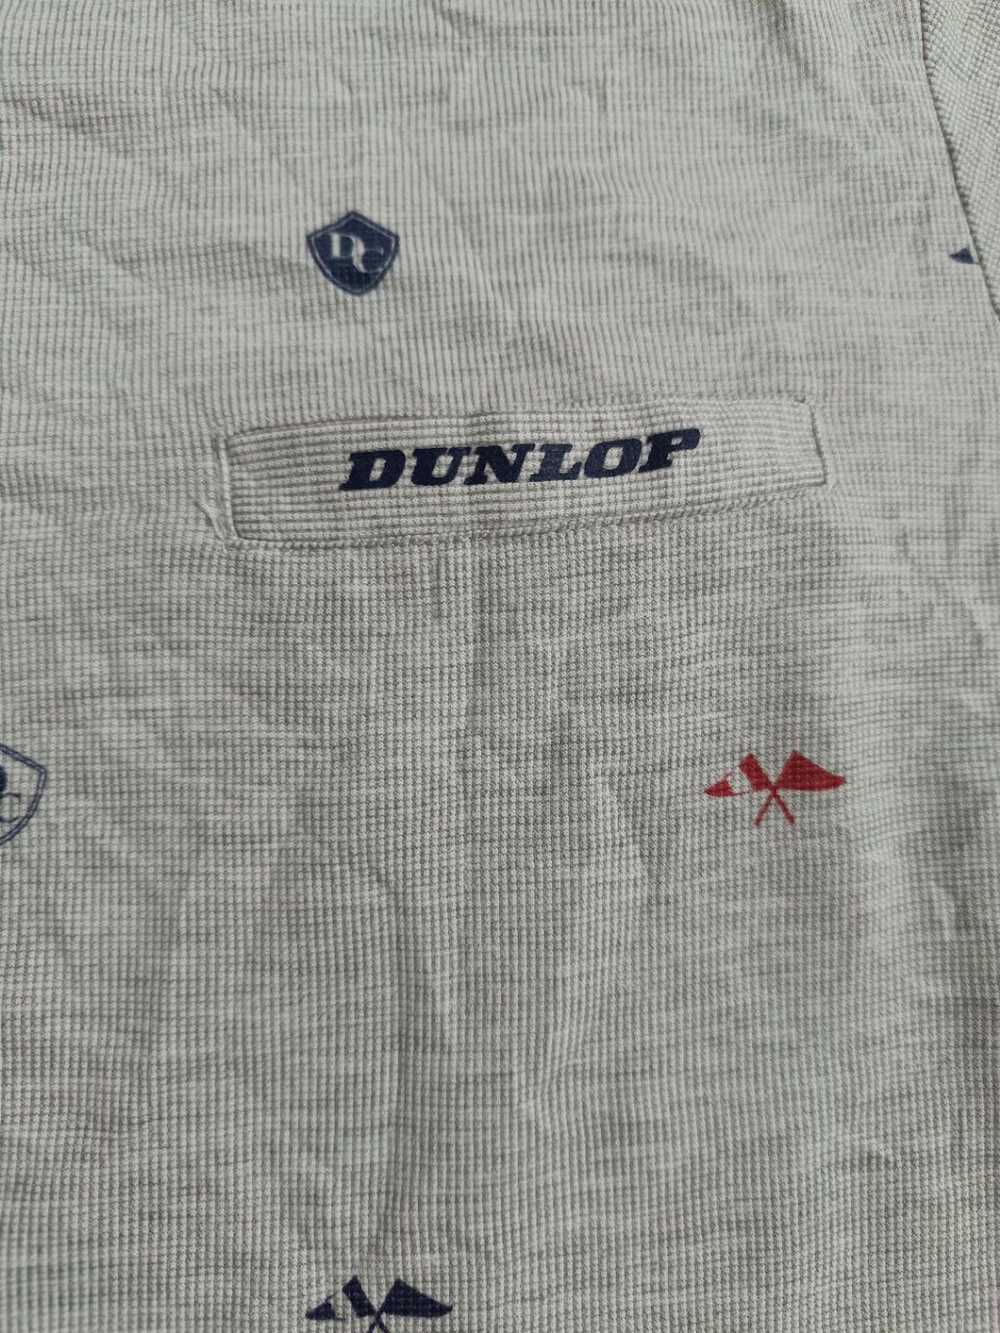 Dunlop Dunlop T Shirt - image 4